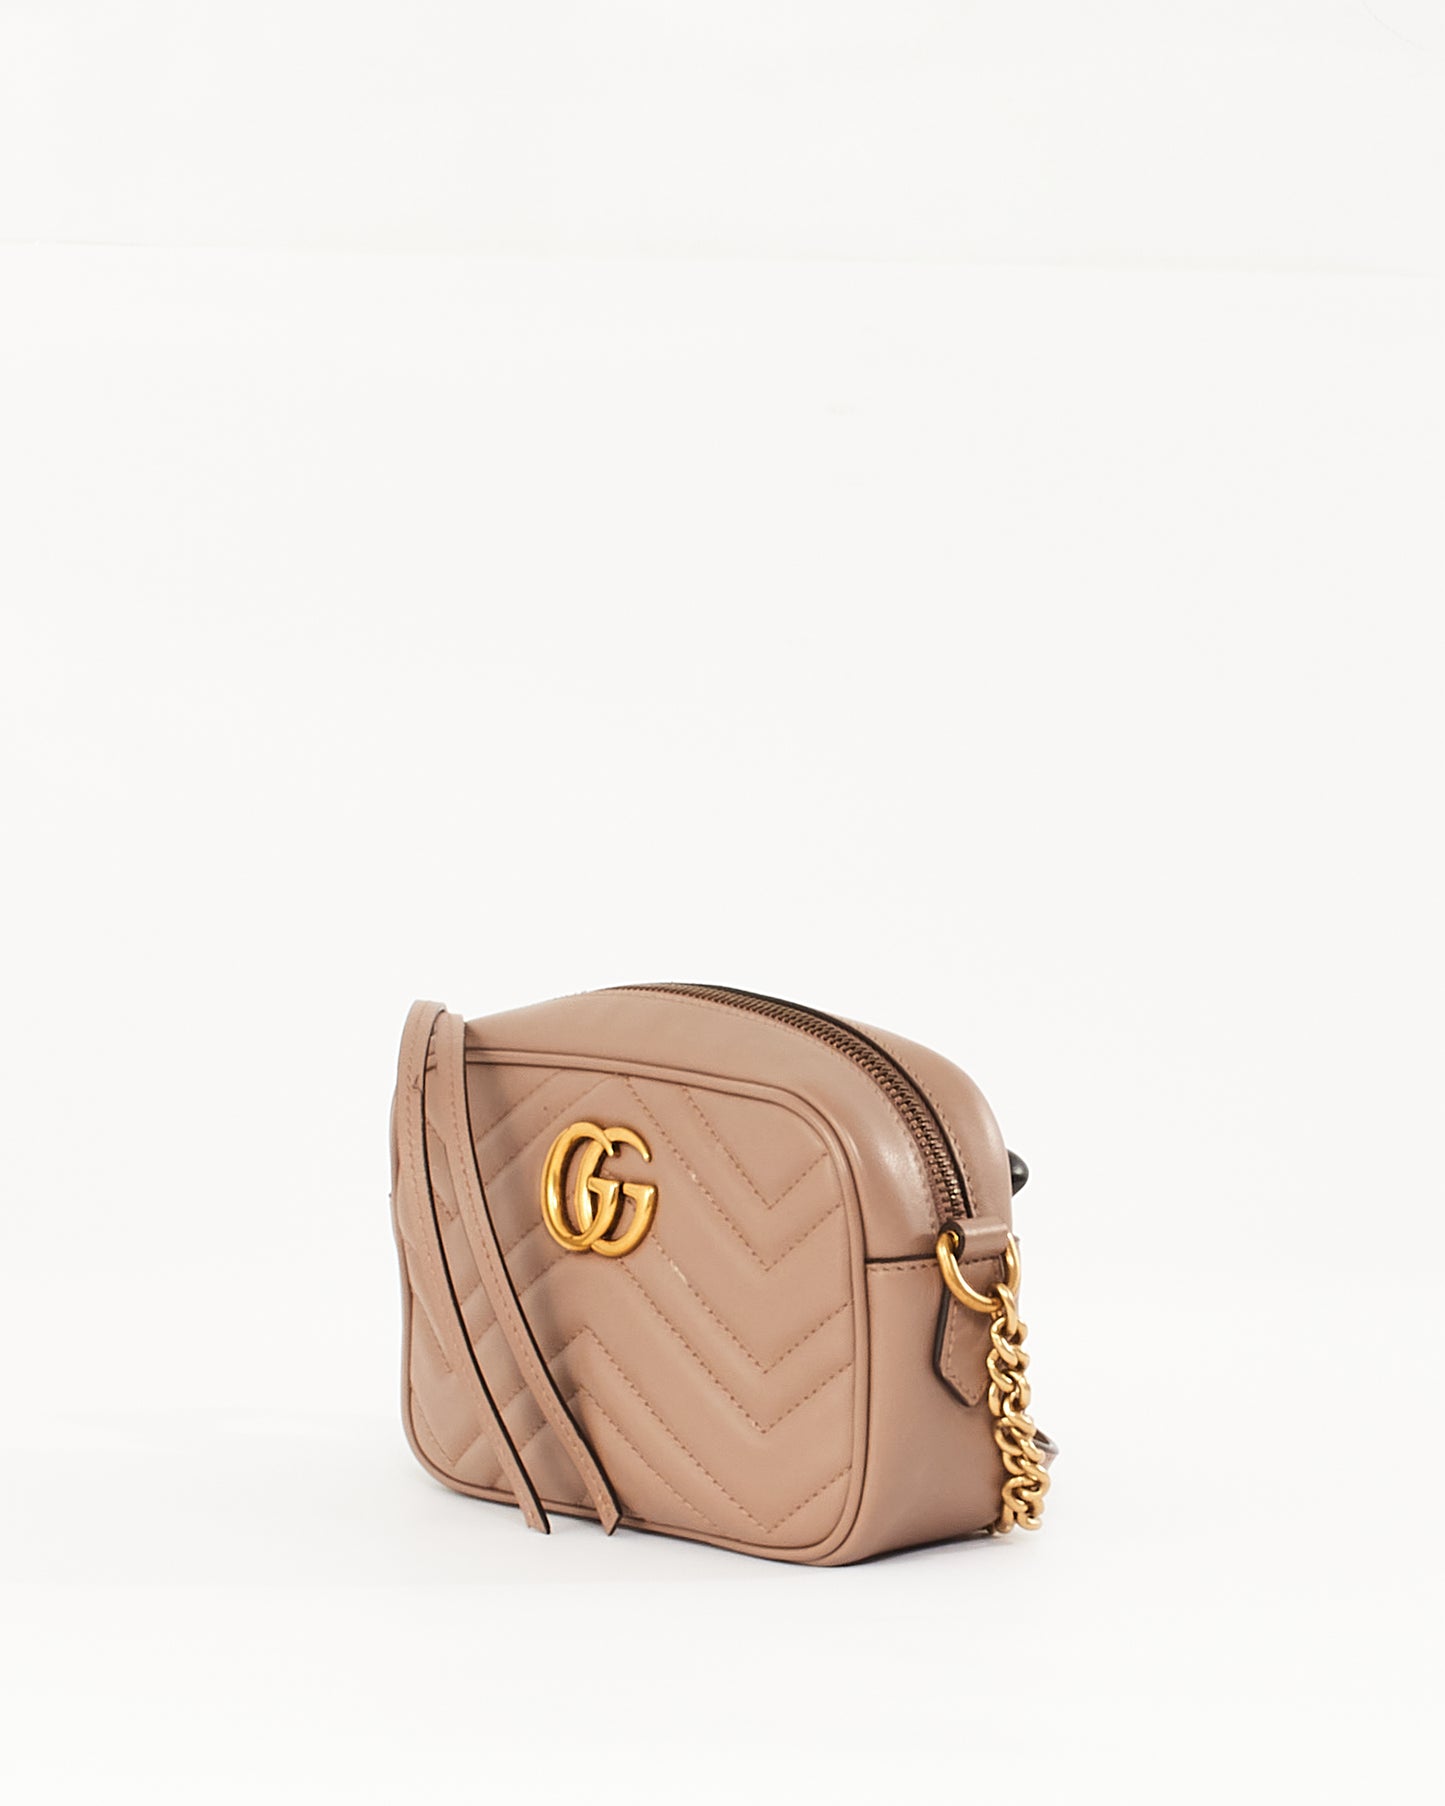 Gucci Mini sac pour appareil photo Marmont Matelassé en cuir rose poussiéreux